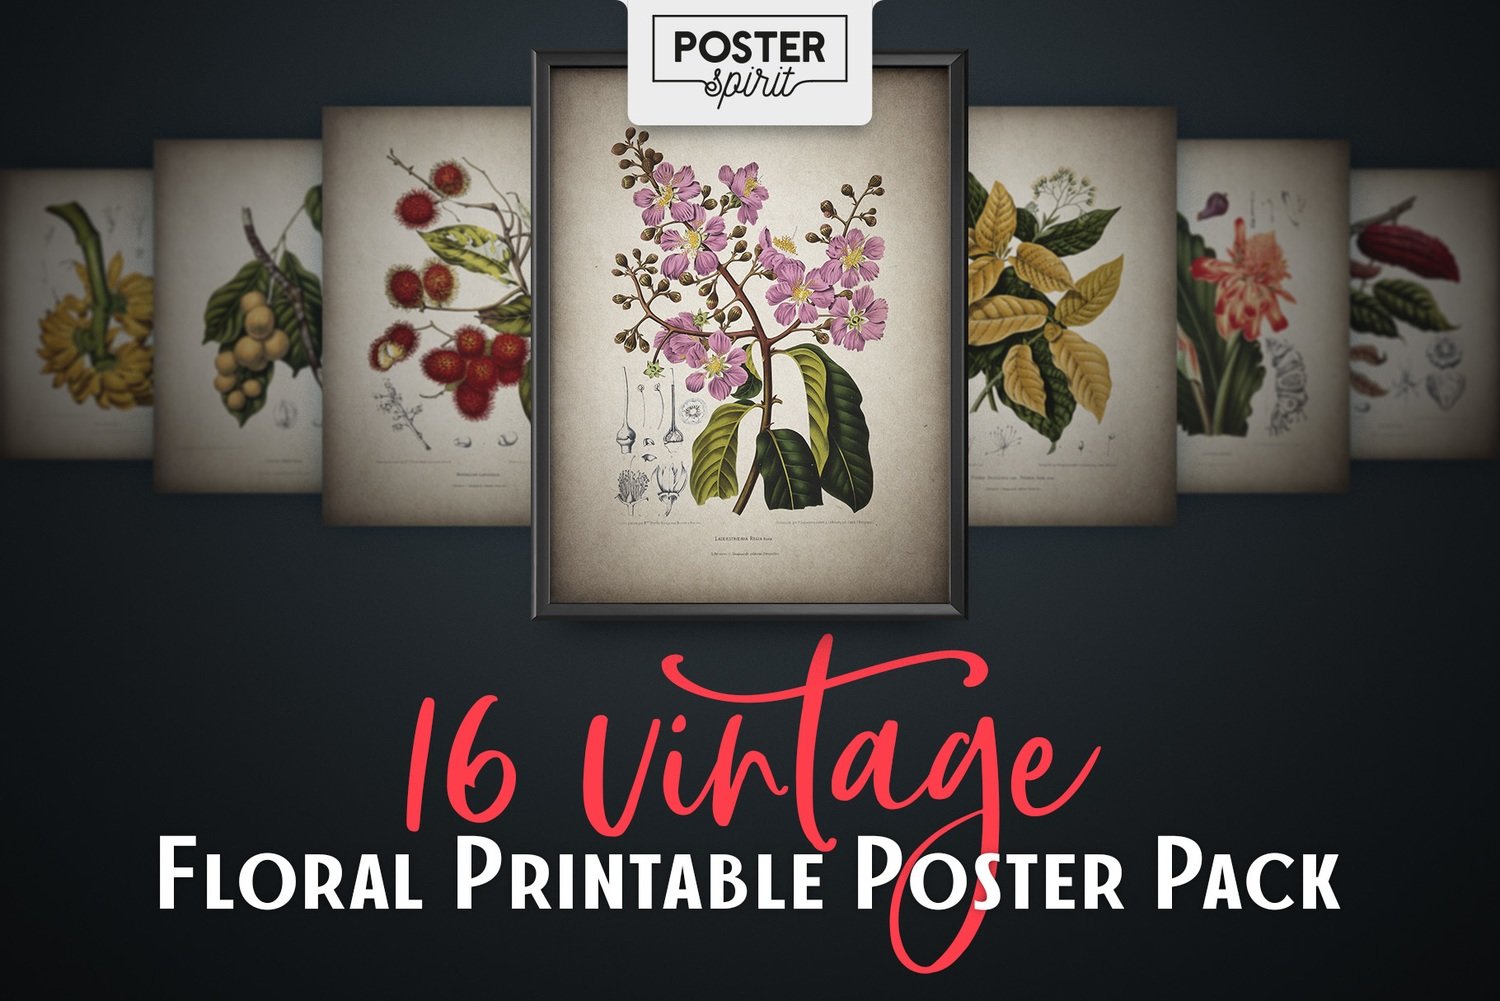 16 Vintage Floral Printable Botanical Poster Pack